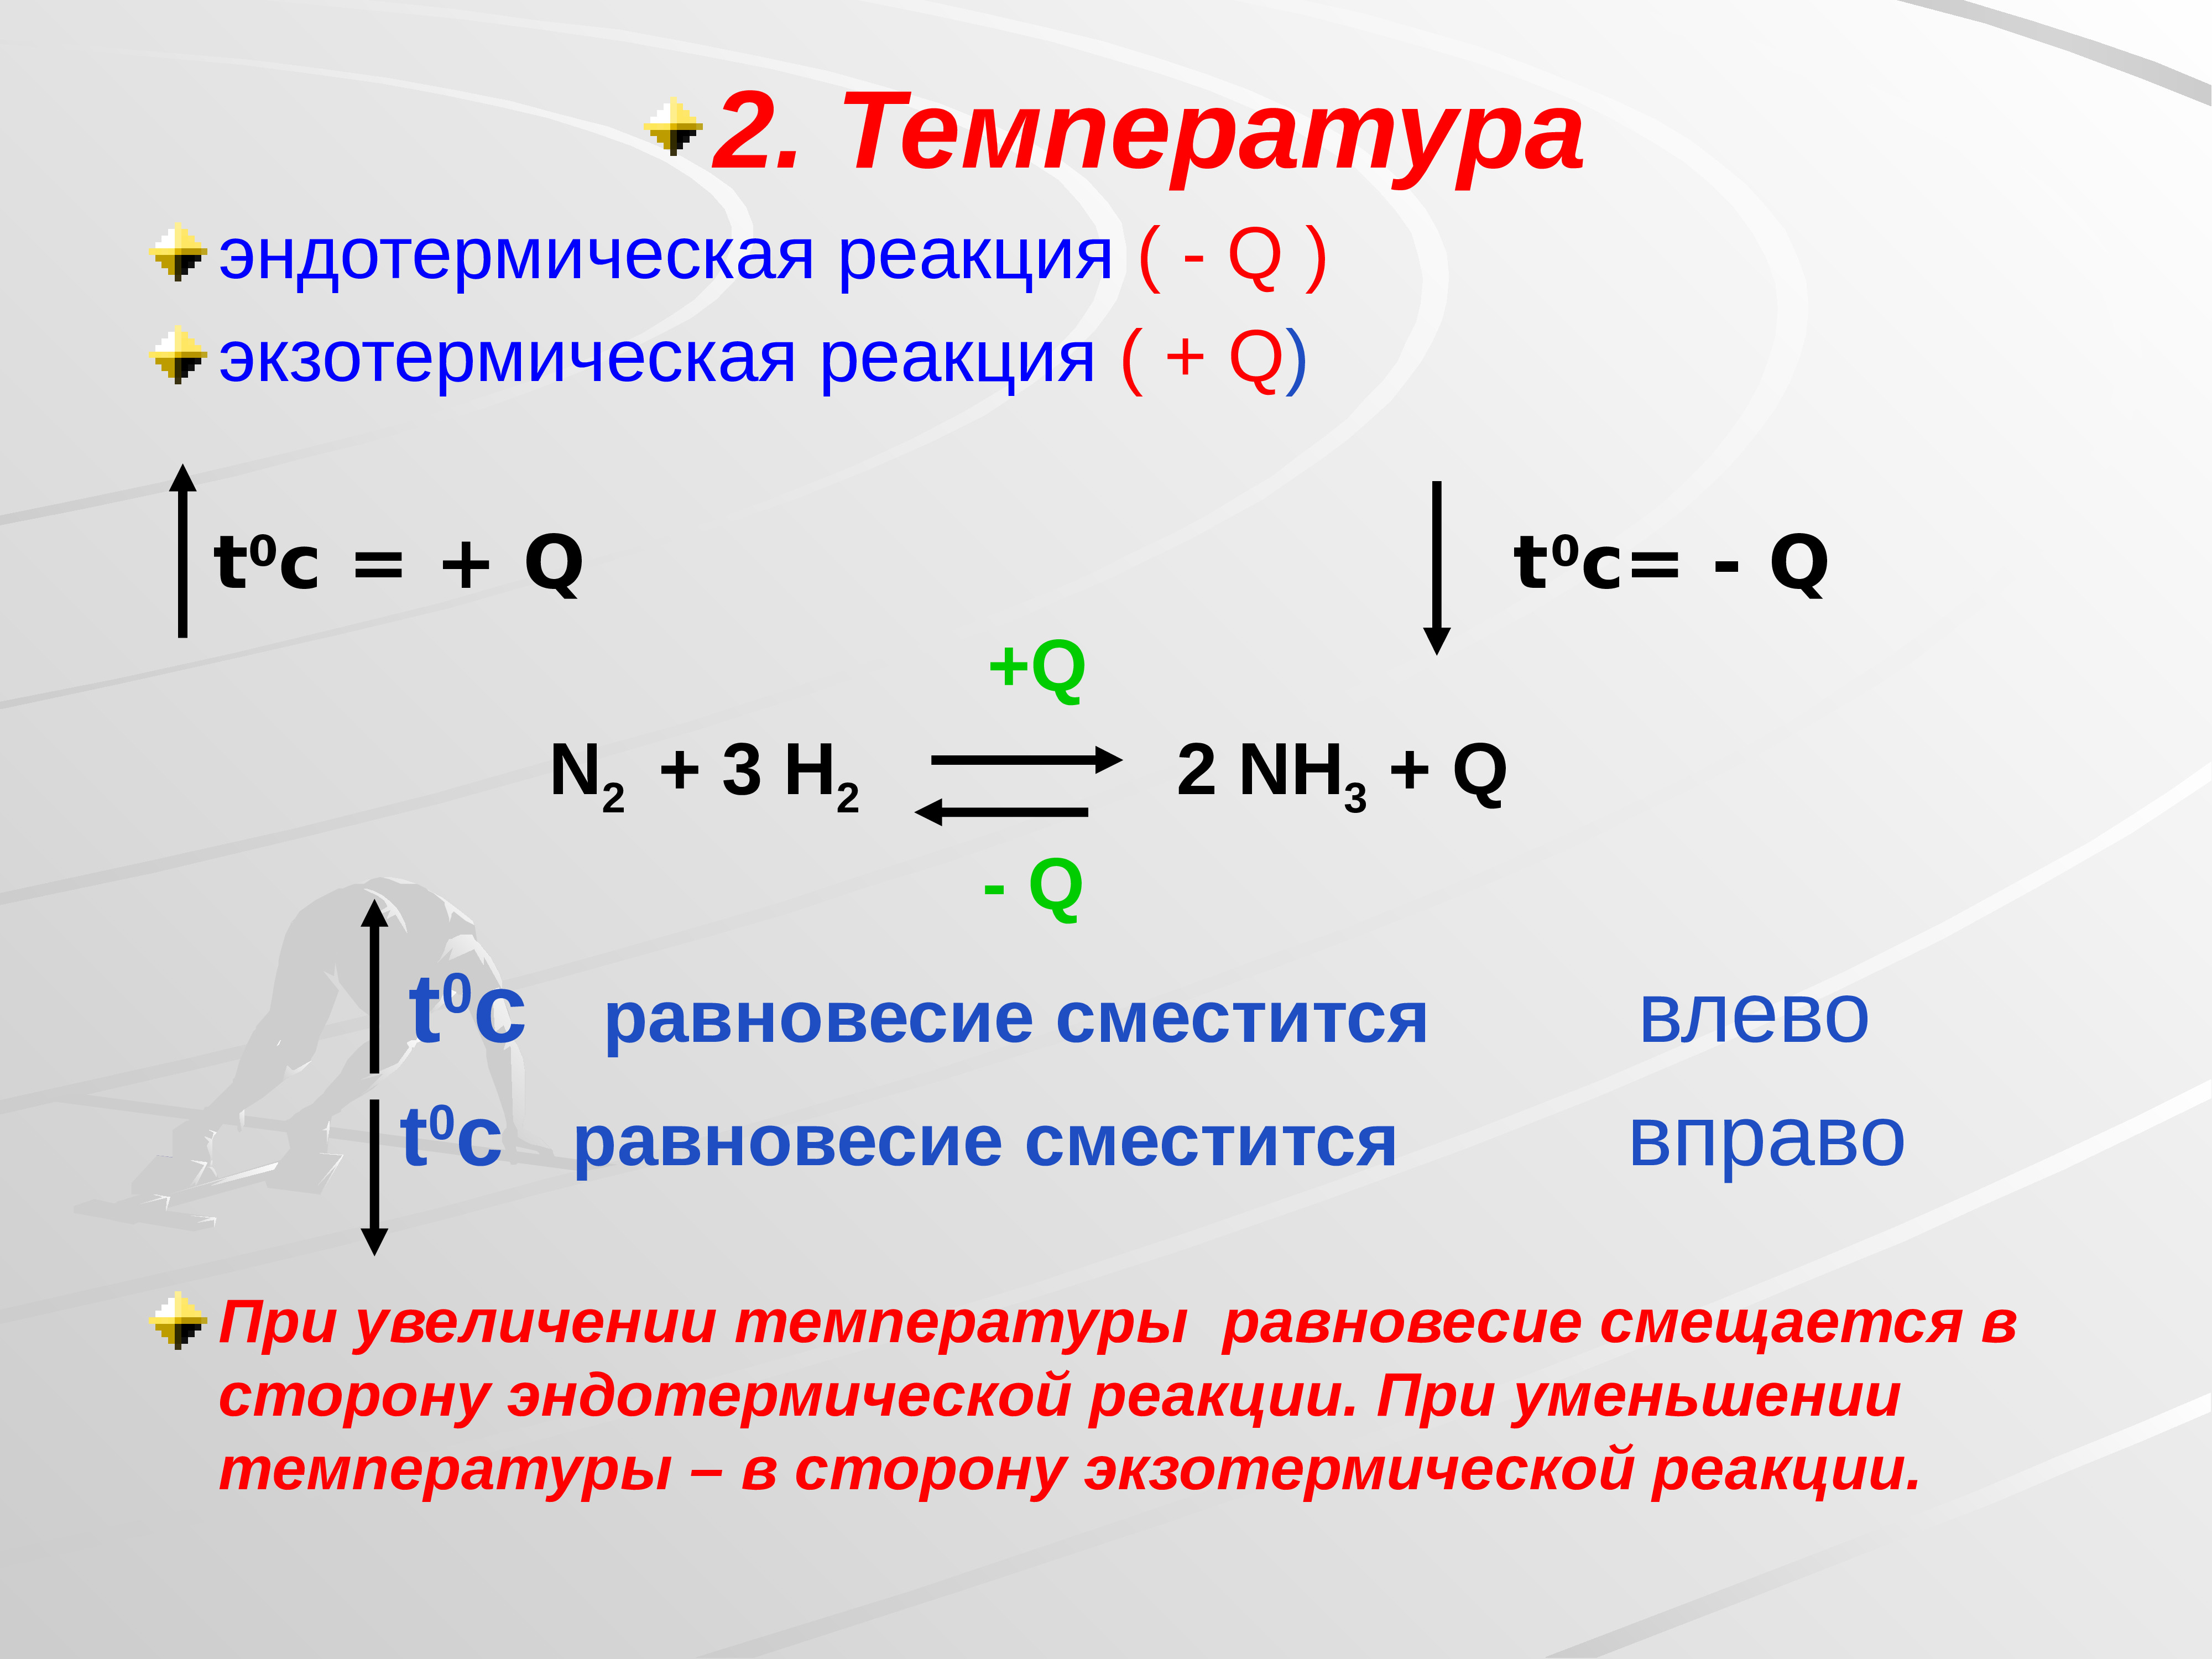 Cl2 h2 температура. Реакция при температуре. Скорость реакции и химическое равновесие. Сторона эндотермической реакции. Смещение равновесия вправо в реакции.